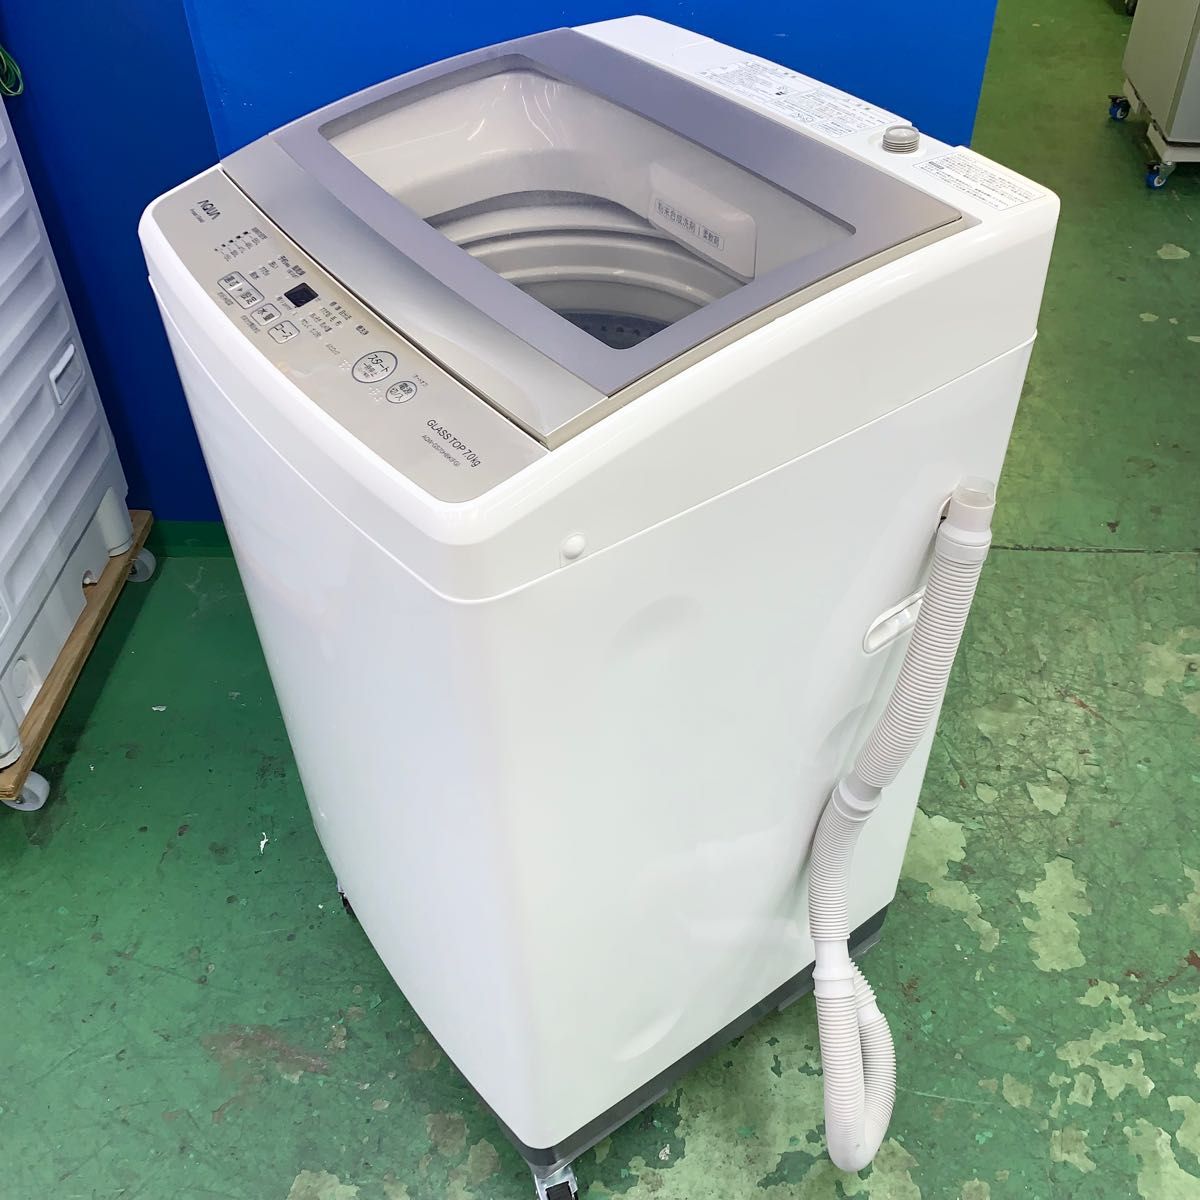 AQUA 全自動洗濯機 2020年7kg 美品 大阪市近郊配送無料｜Yahoo!フリマ 